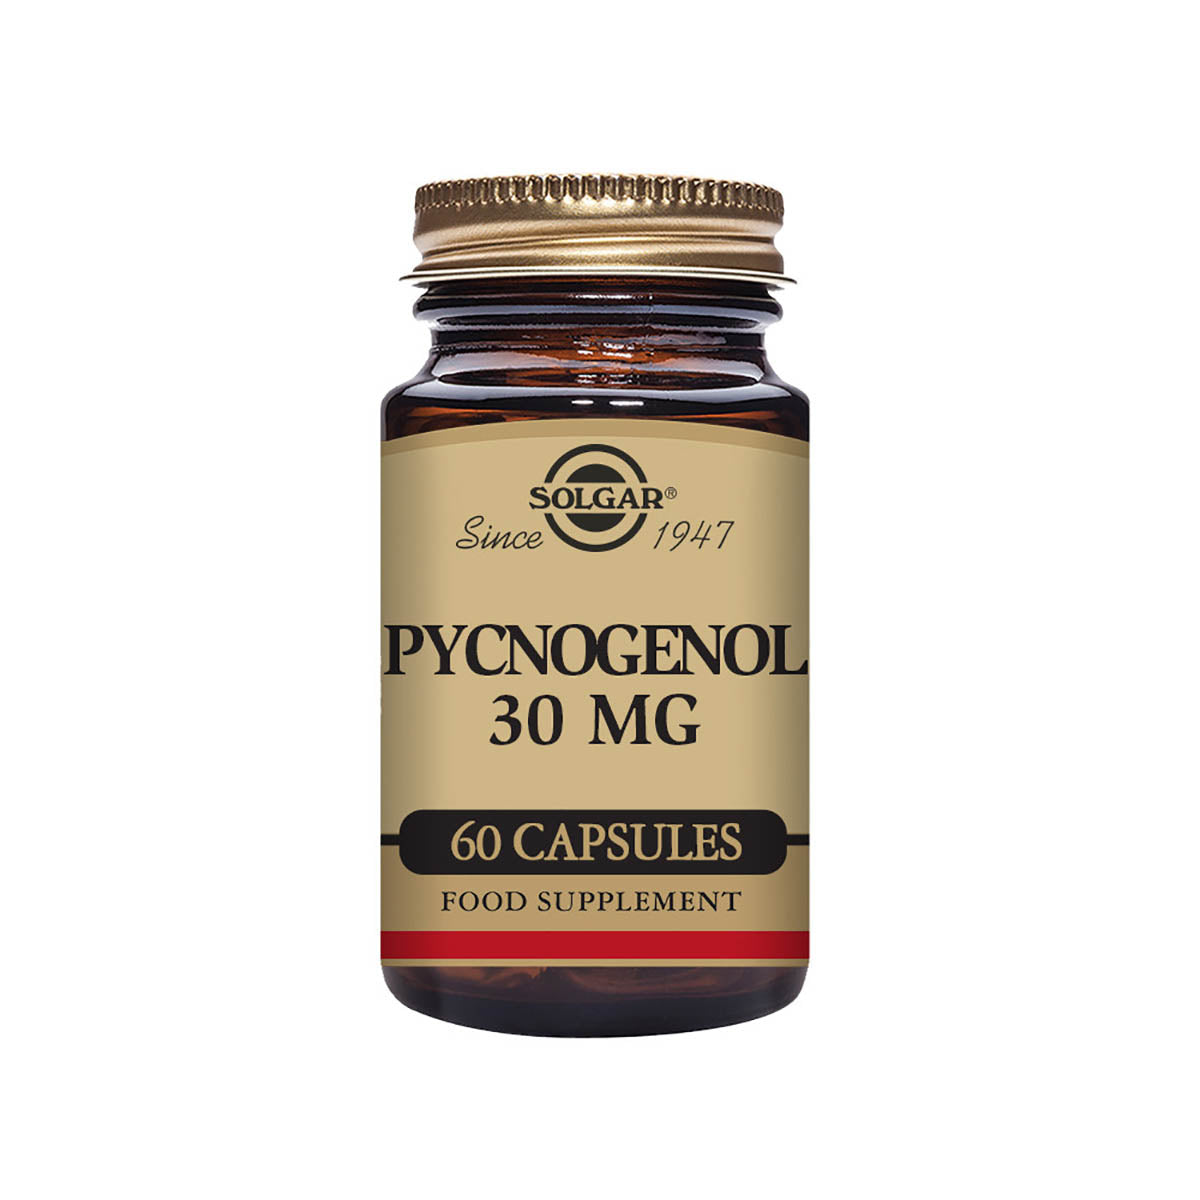 Solgar® Pycnogenol 30 mg Vegetable Capsules - Pack of 60